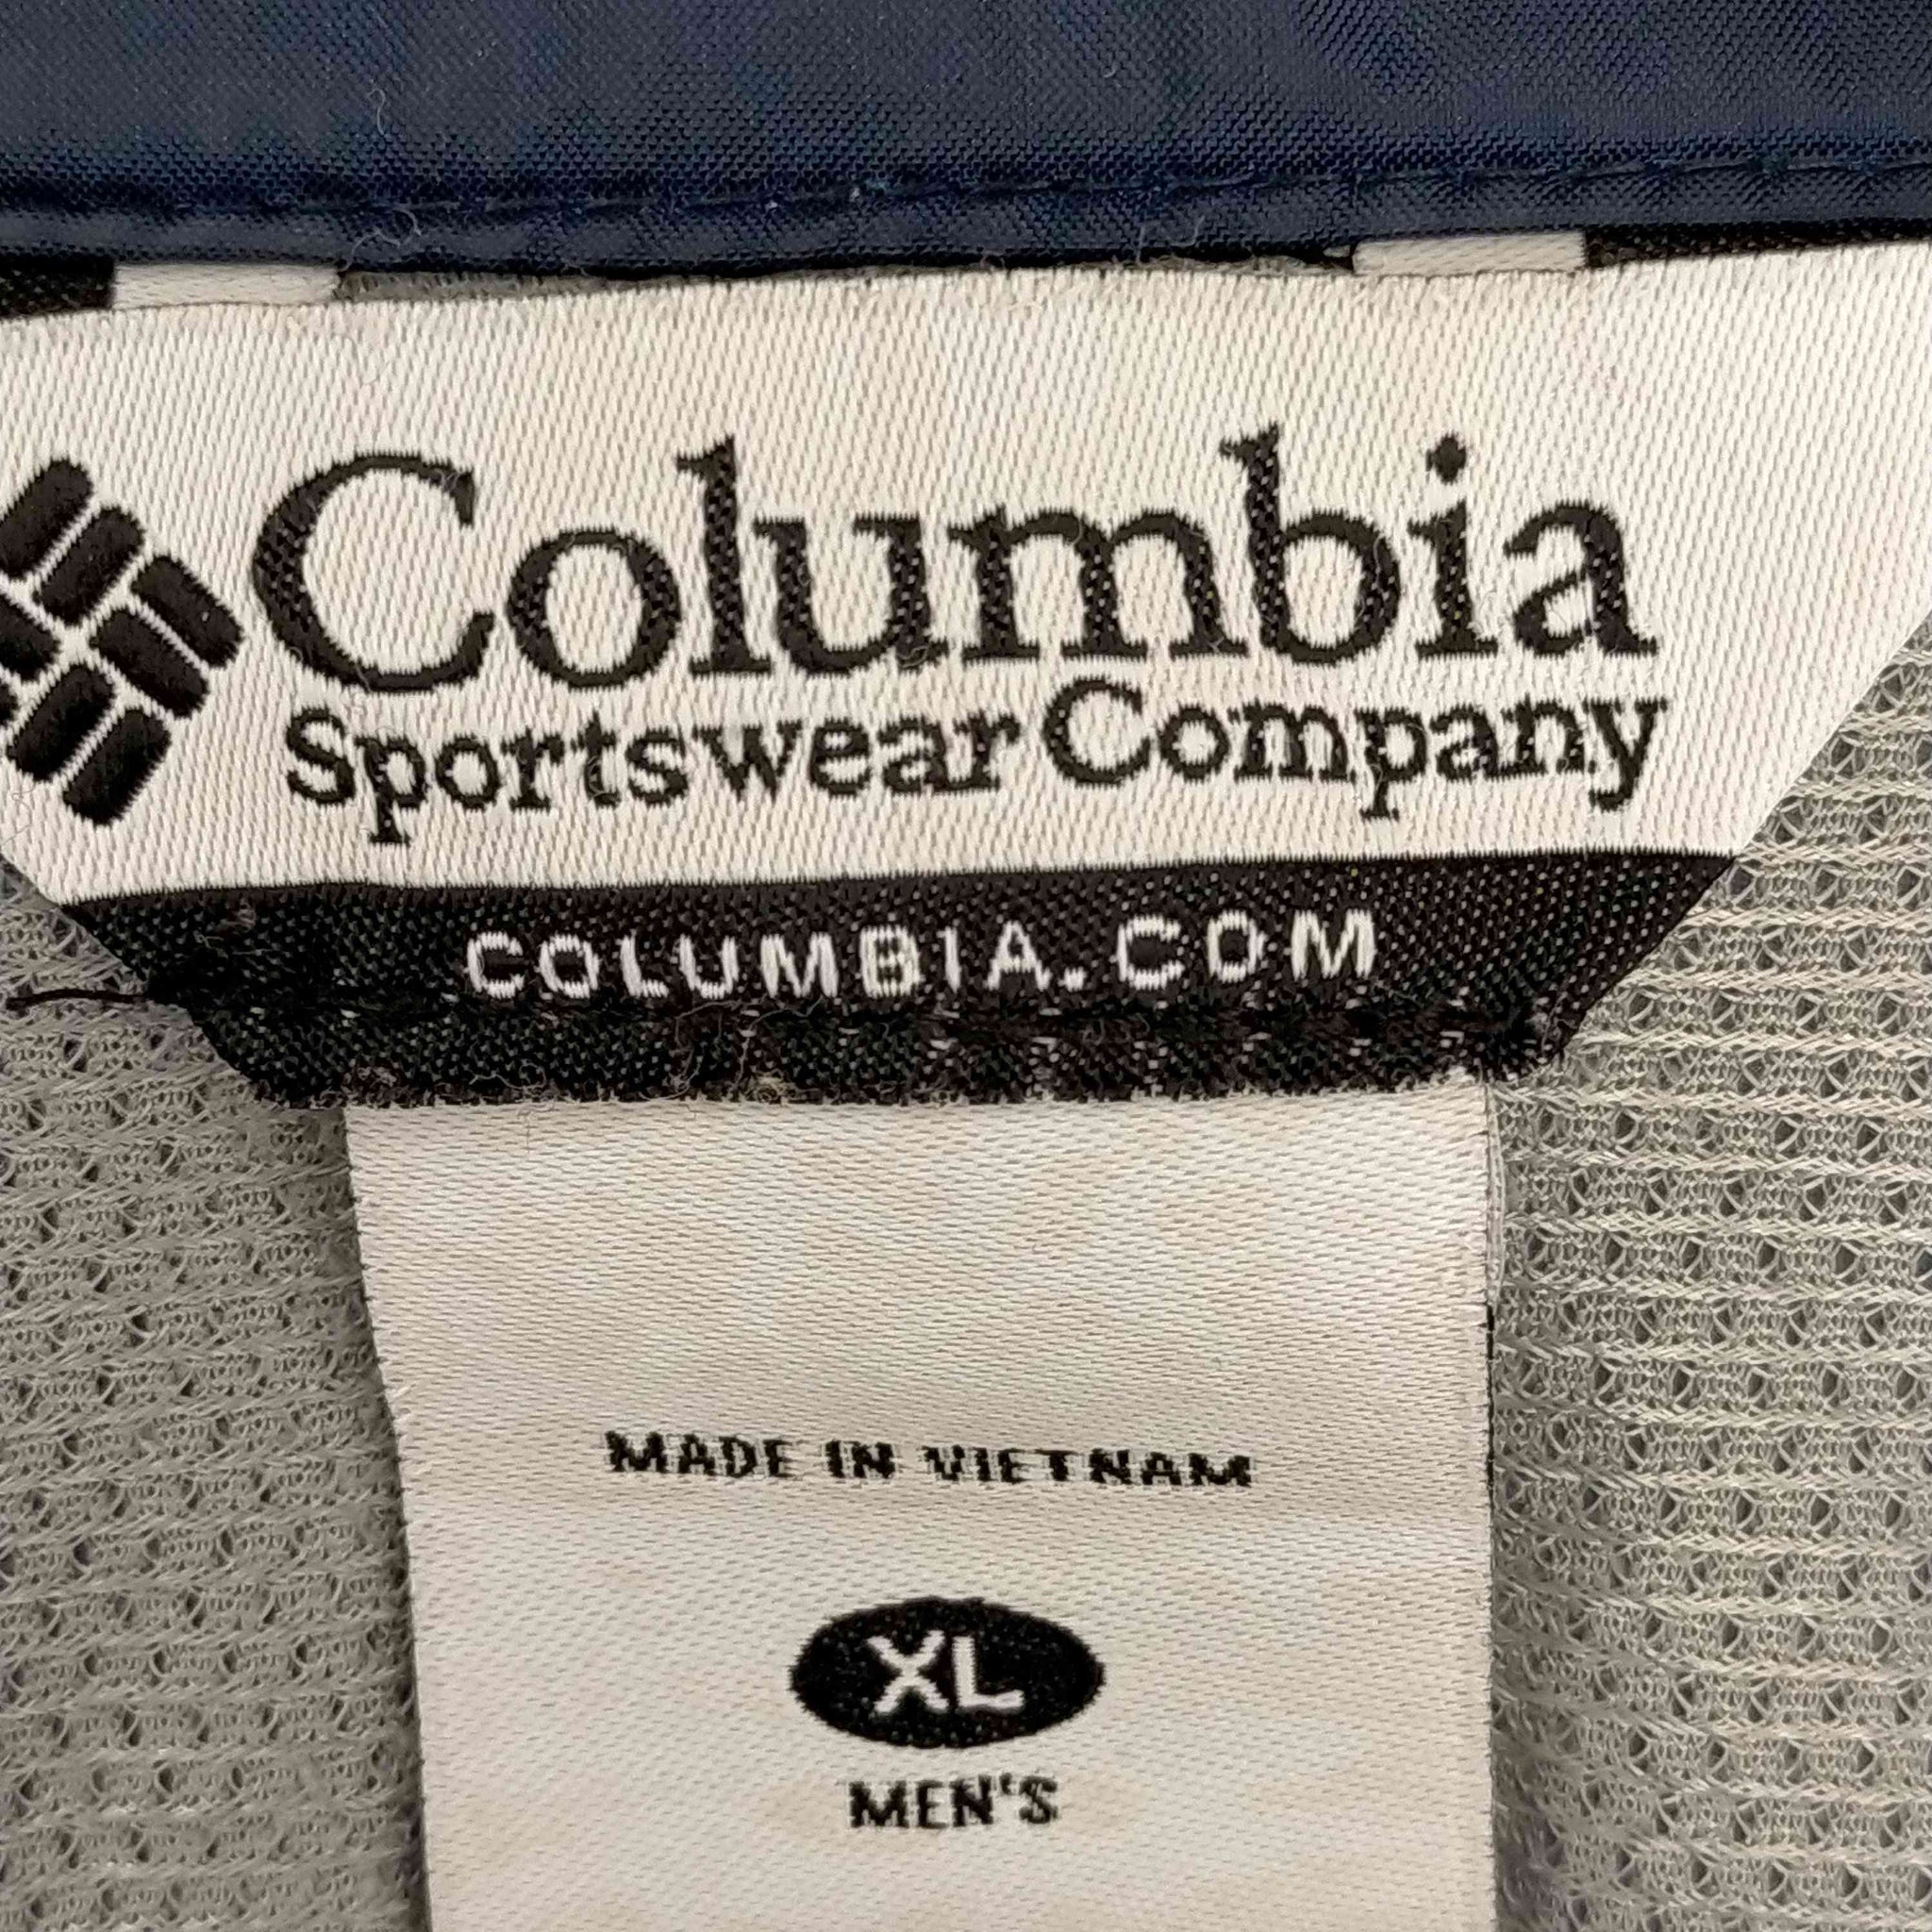 Columbia(コロンビア)企業ロゴ クーガーピークスジャケット